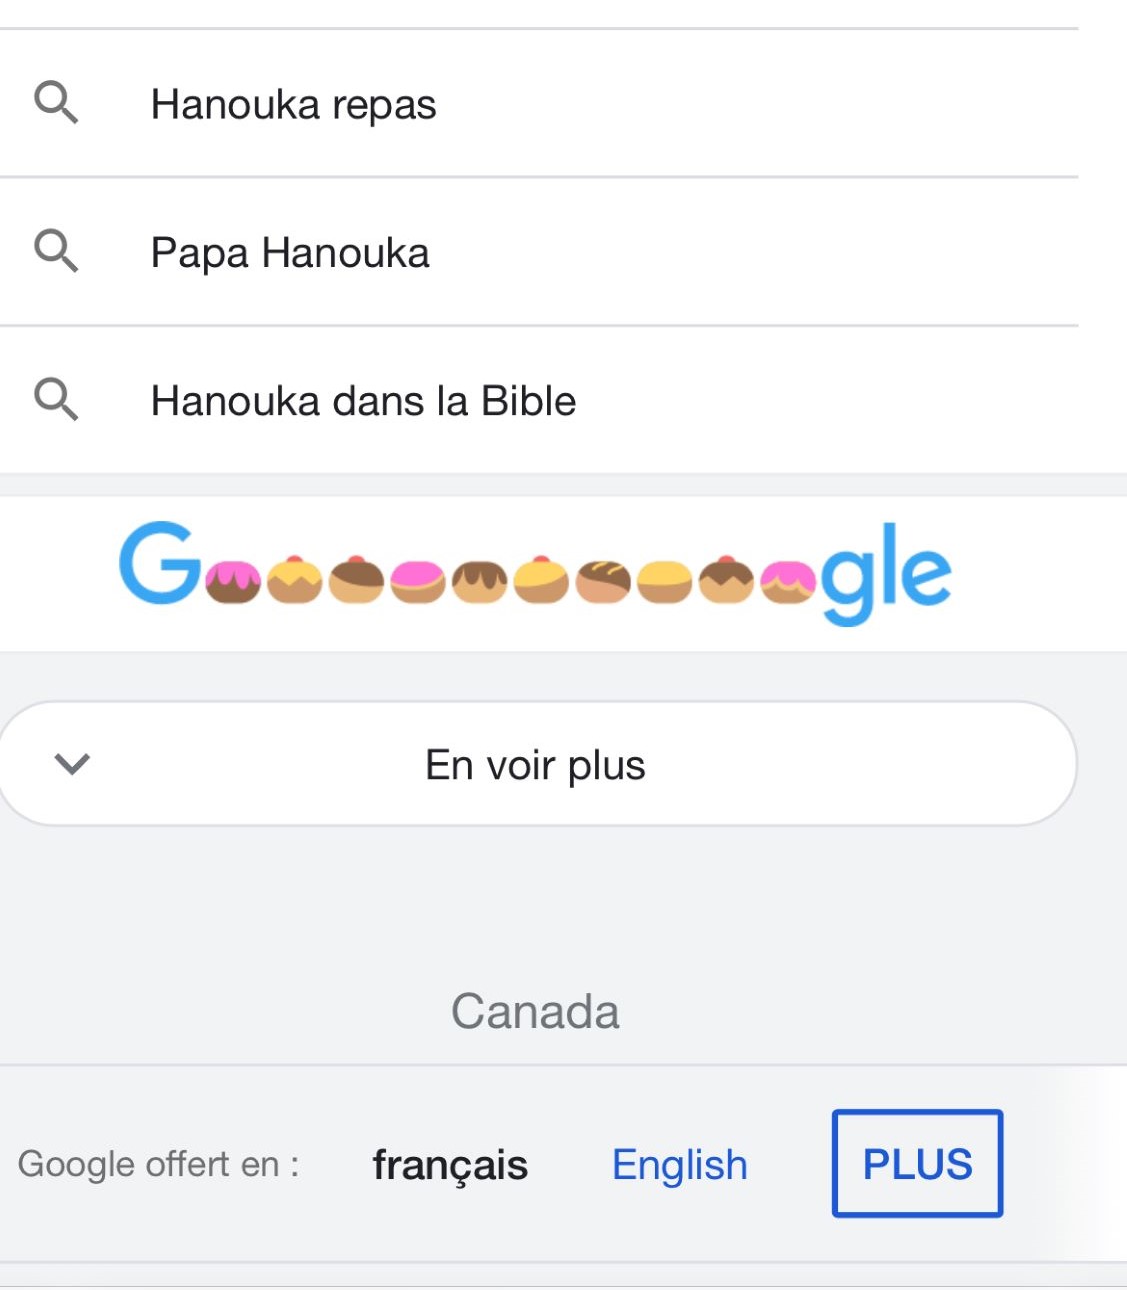 La guirlande de l'Oeuf de Pâques de Google Hanoucca sur mobile.